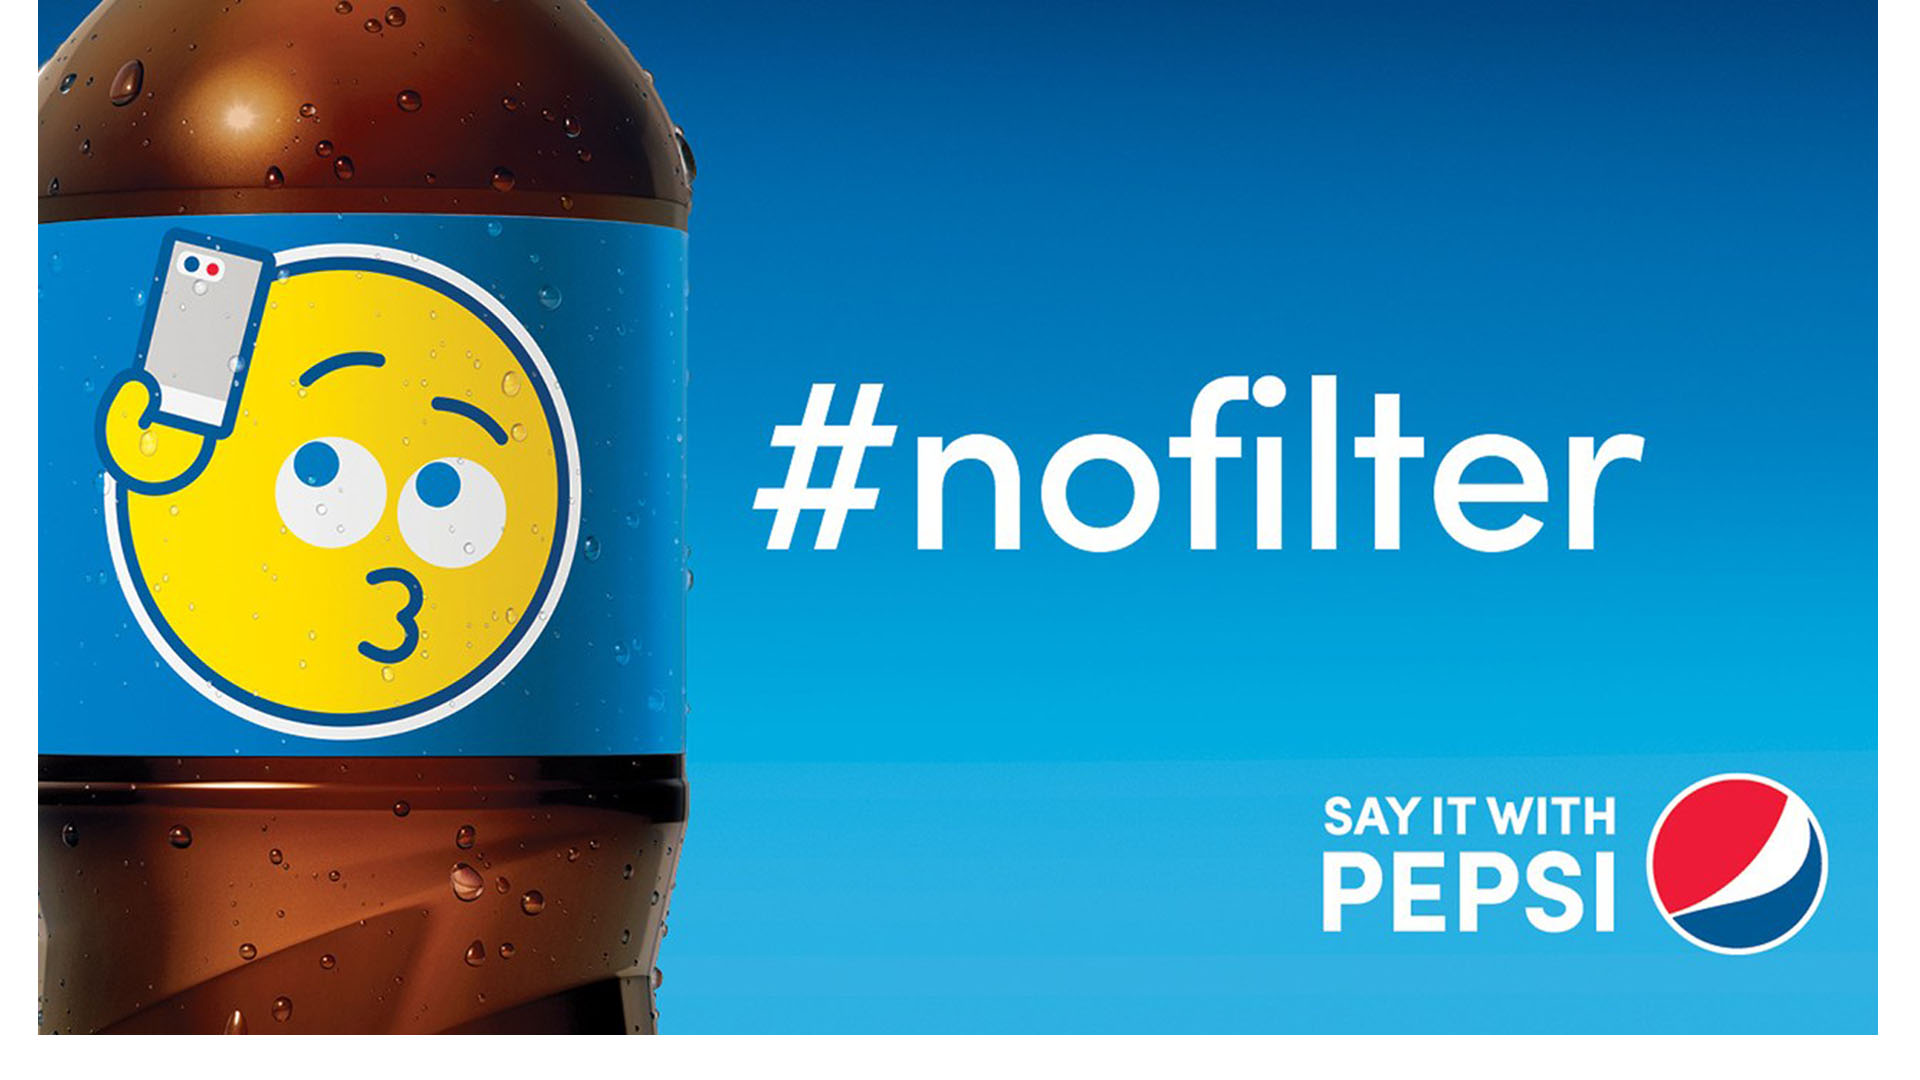 La compañía de refrescos se une a los emojis en la campaña que tendrá diversos diseños en botellas y latas